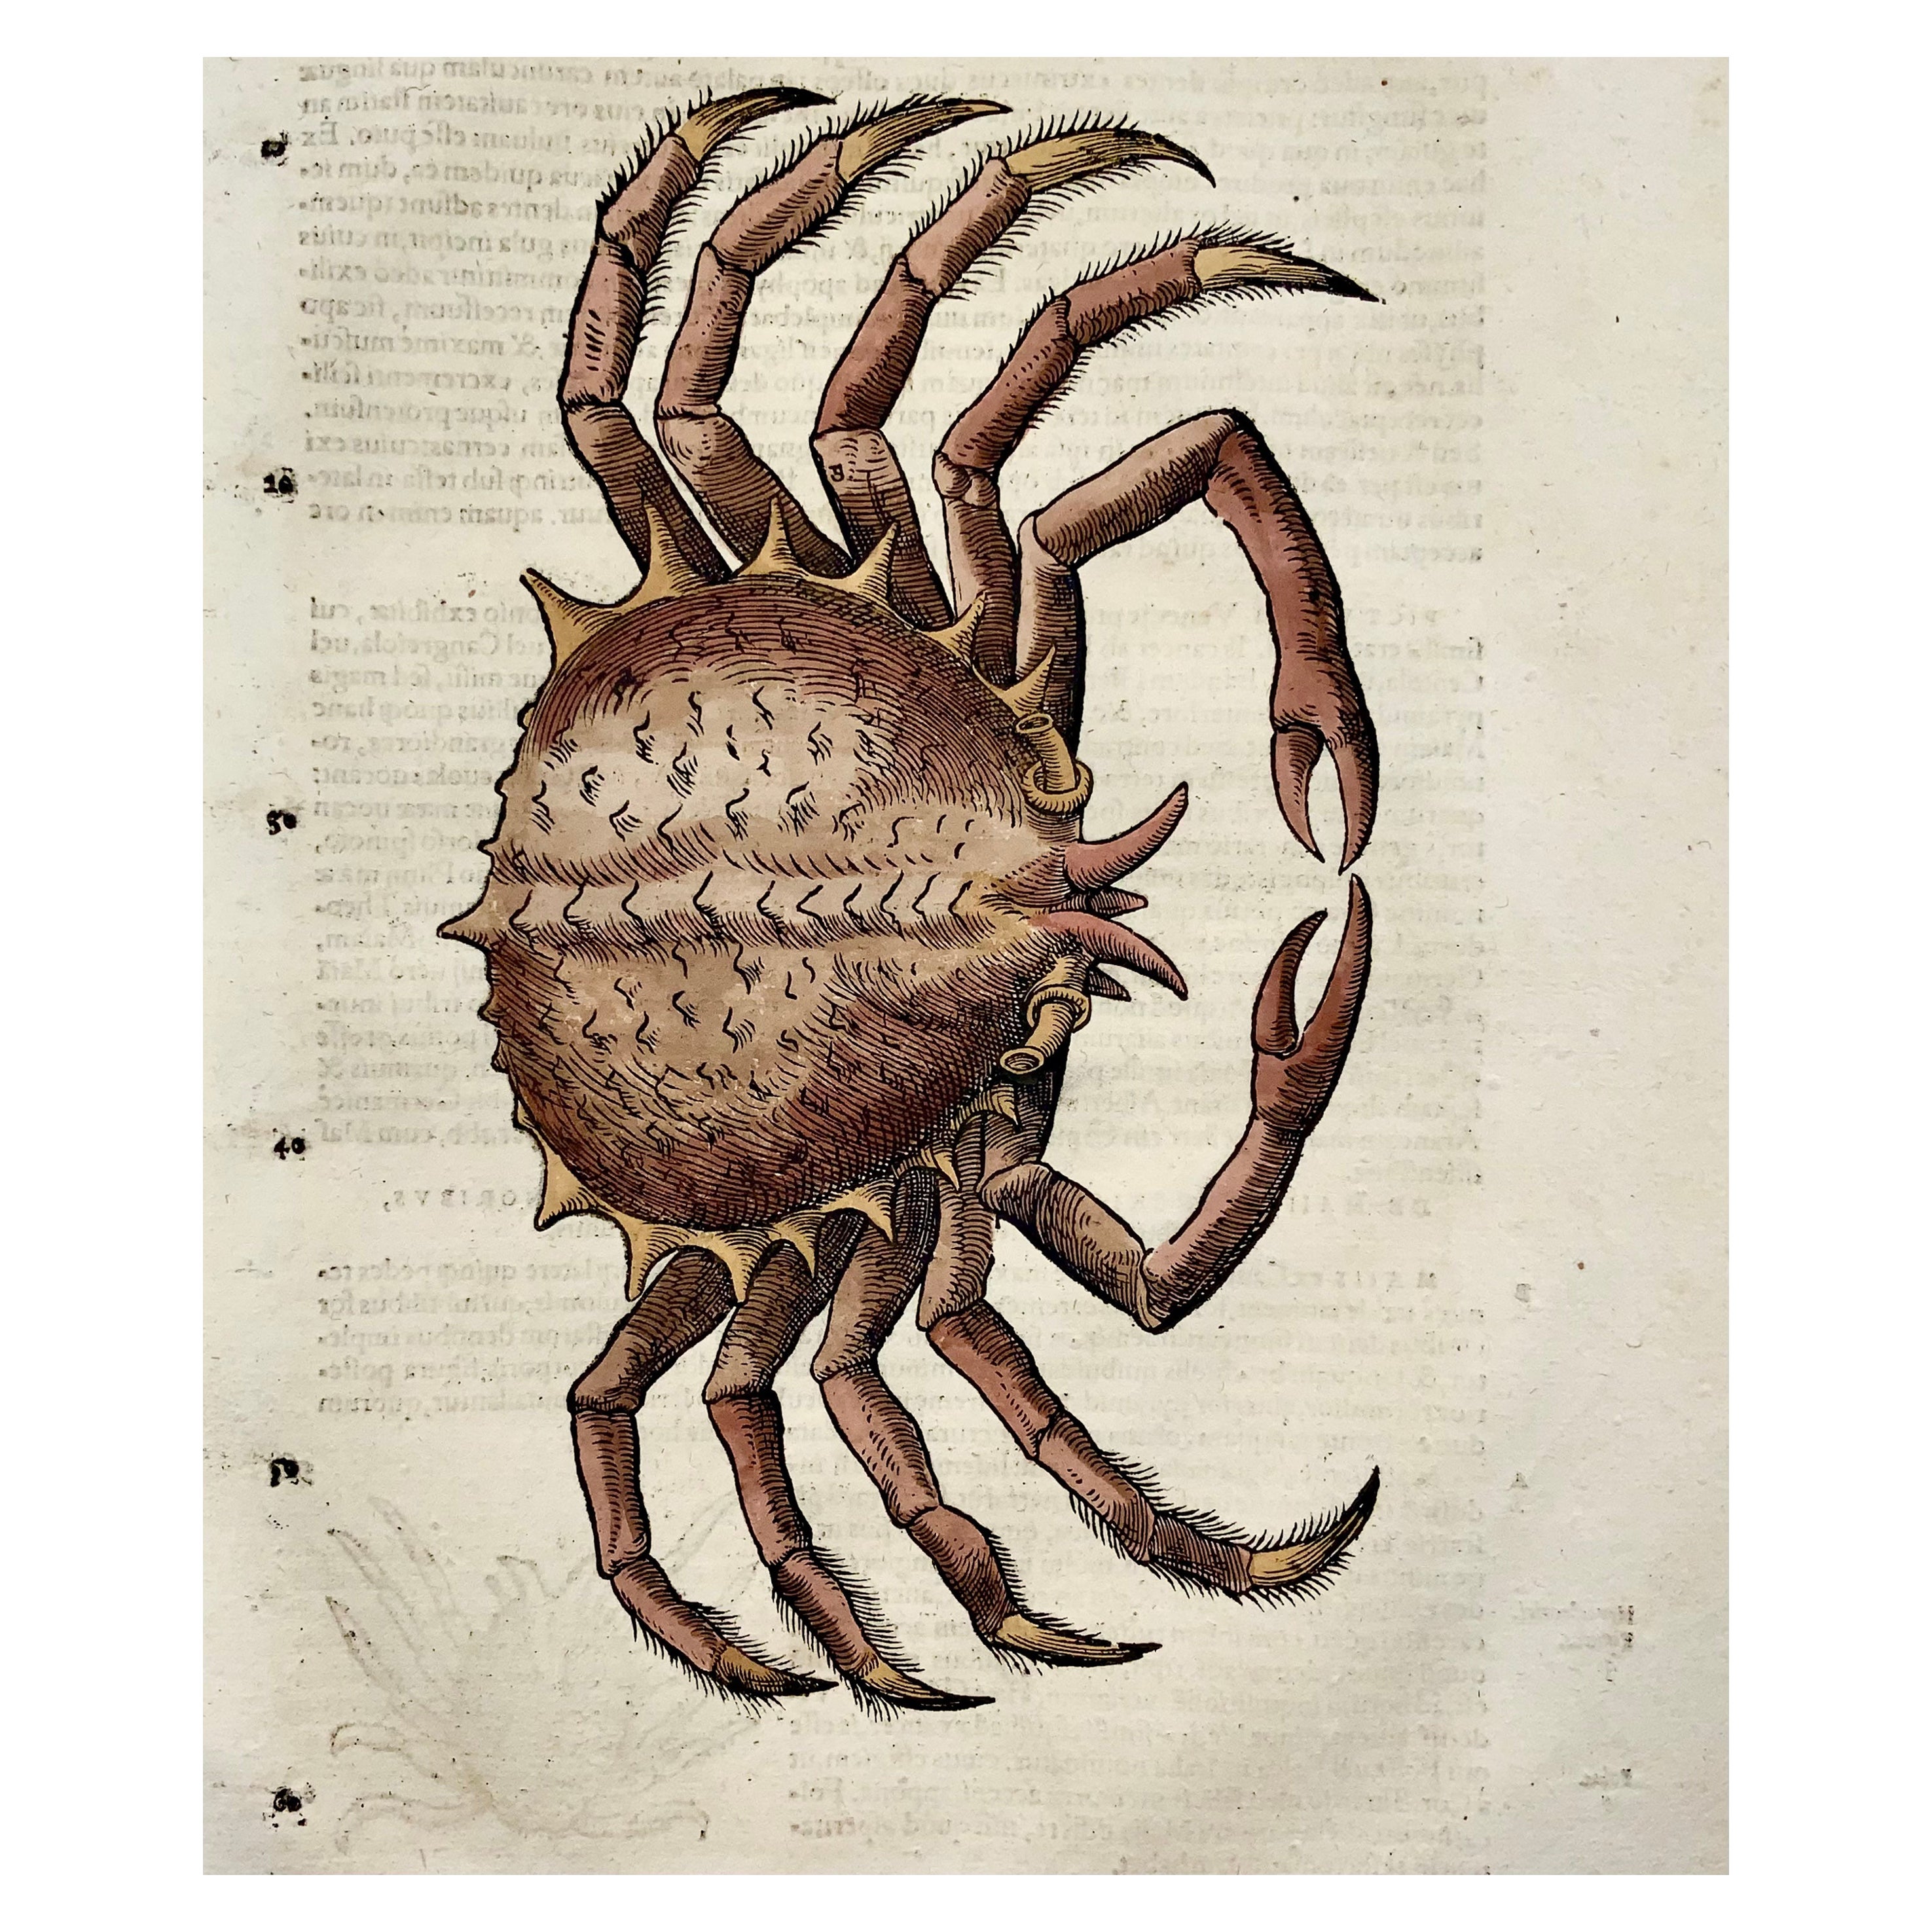 Corbeille d'araignée 1558, Conrad Gesner, folio, gravure sur bois, colorée à la main, premier état